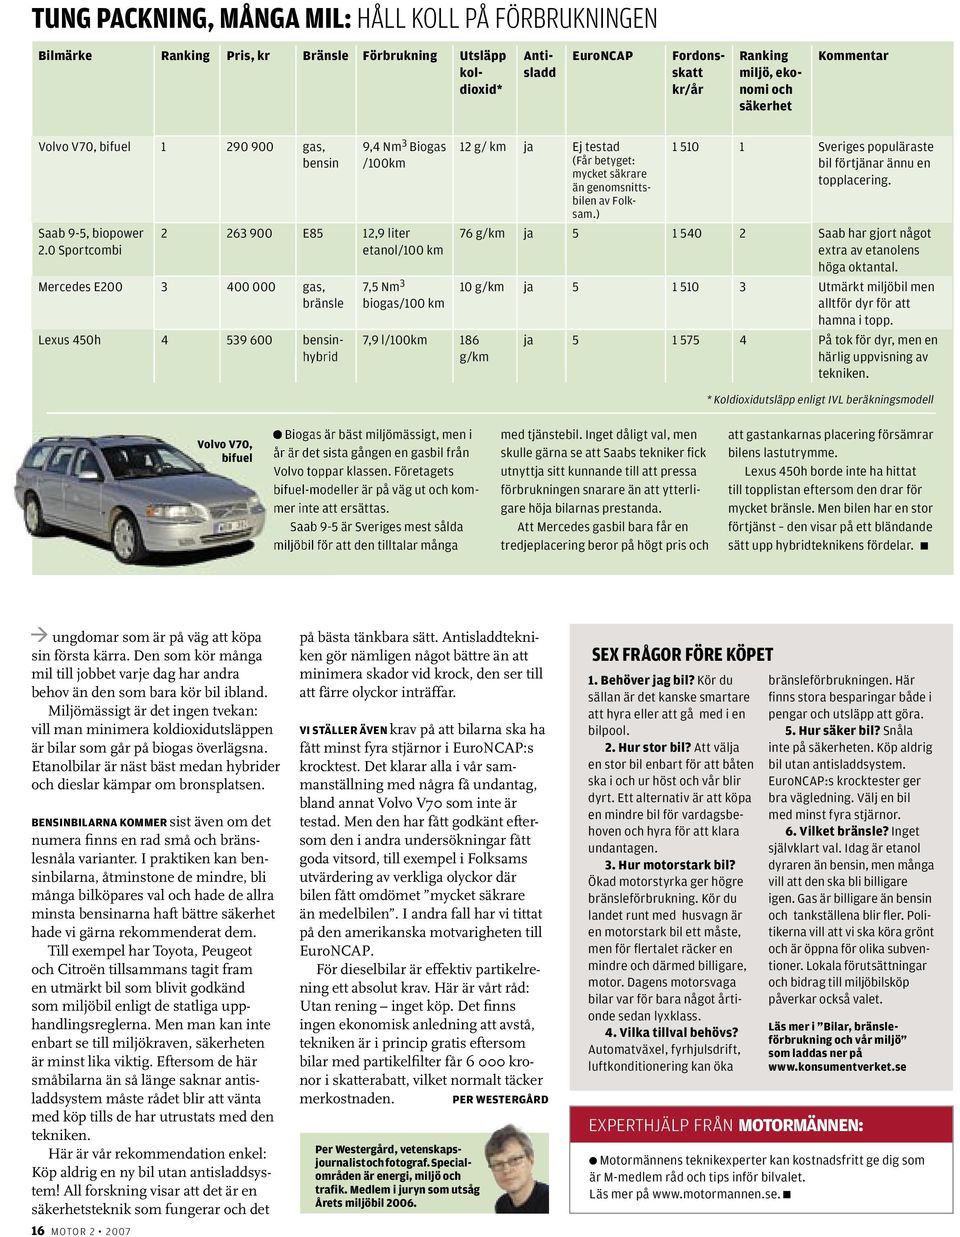 (Får betyget: mycket säkrare än genomsnittsbilen av Folksam.) 1 510 1 Sveriges populäraste bil förtjänar ännu en topp lacering.